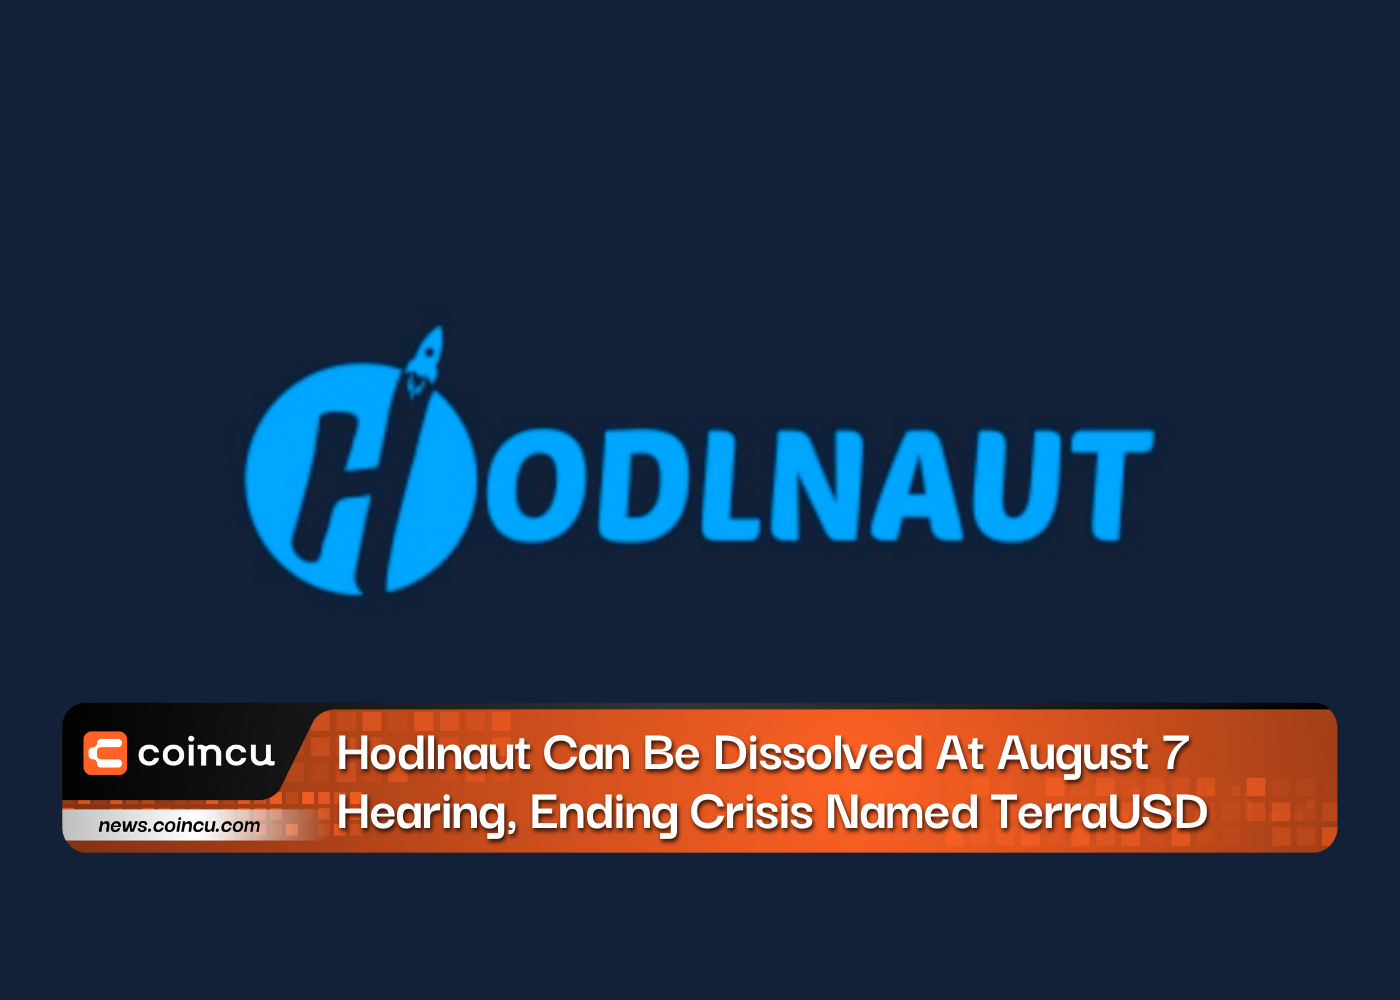 يمكن حل Hodlnaut في جلسة 7 أغسطس ، لإنهاء الأزمة المسماة TerraUSD